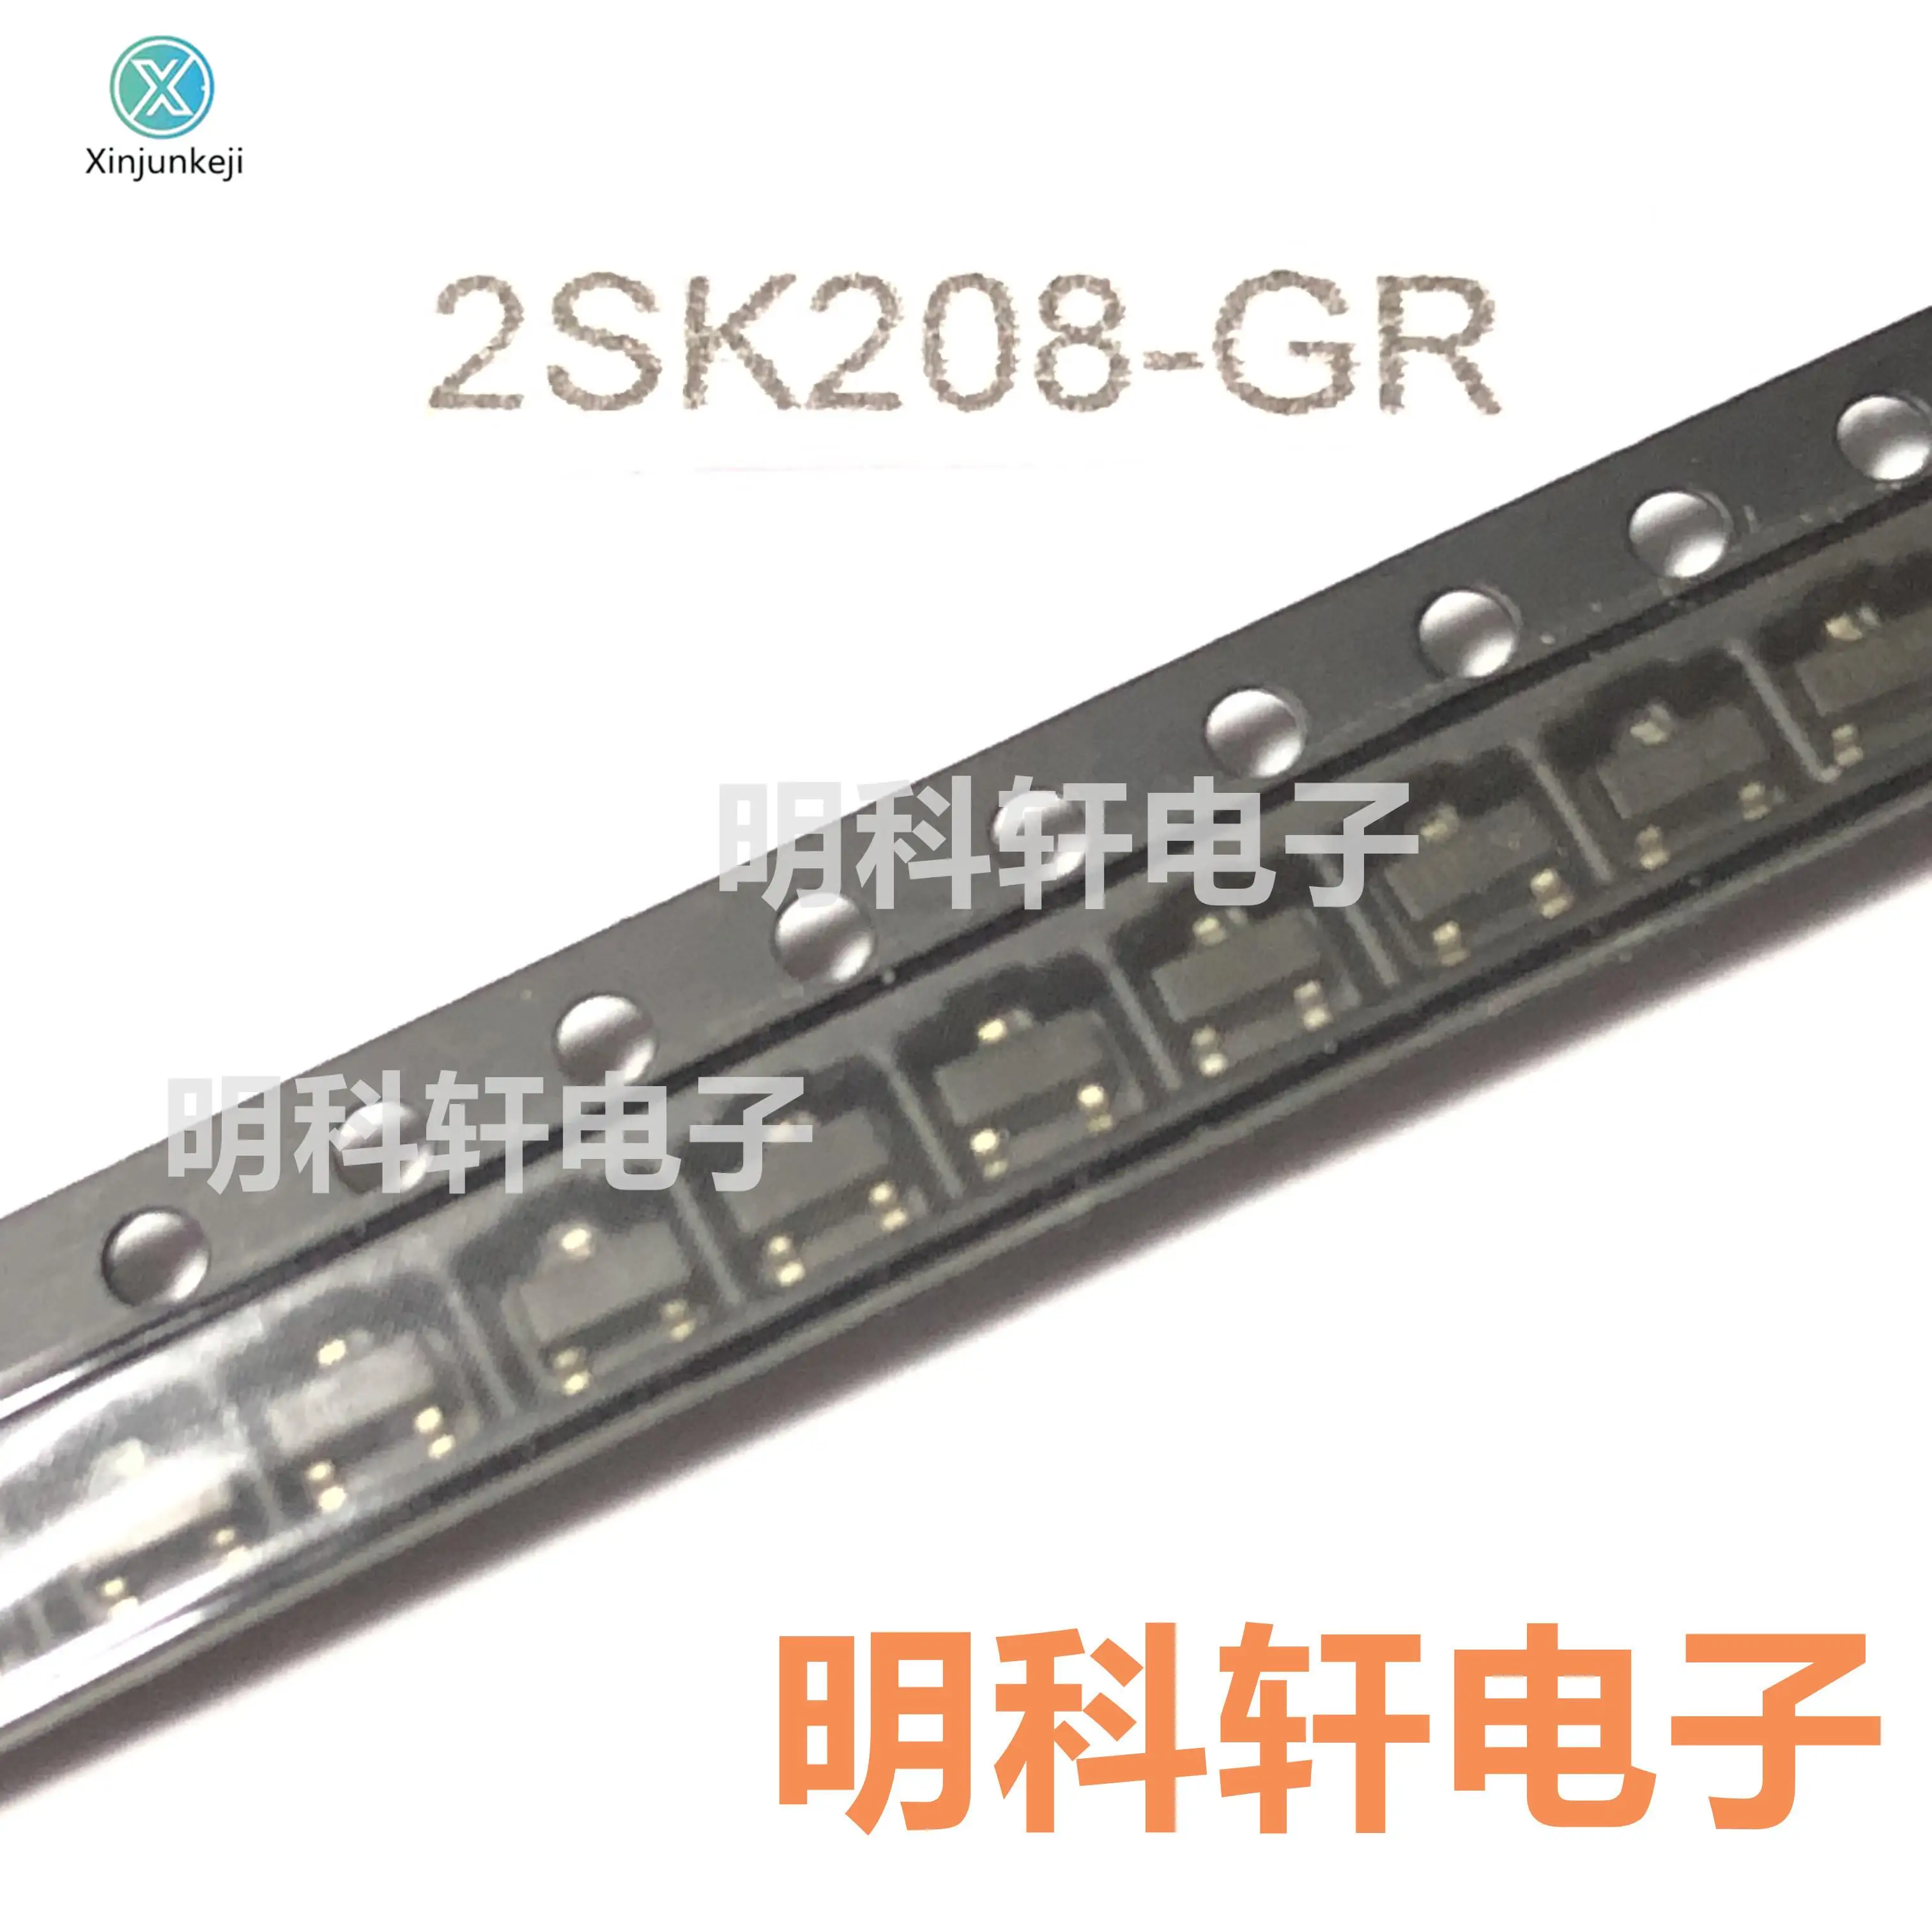 

30pcs orginal new 2SK208-GR silk screen JG SOT23 SMD transistor